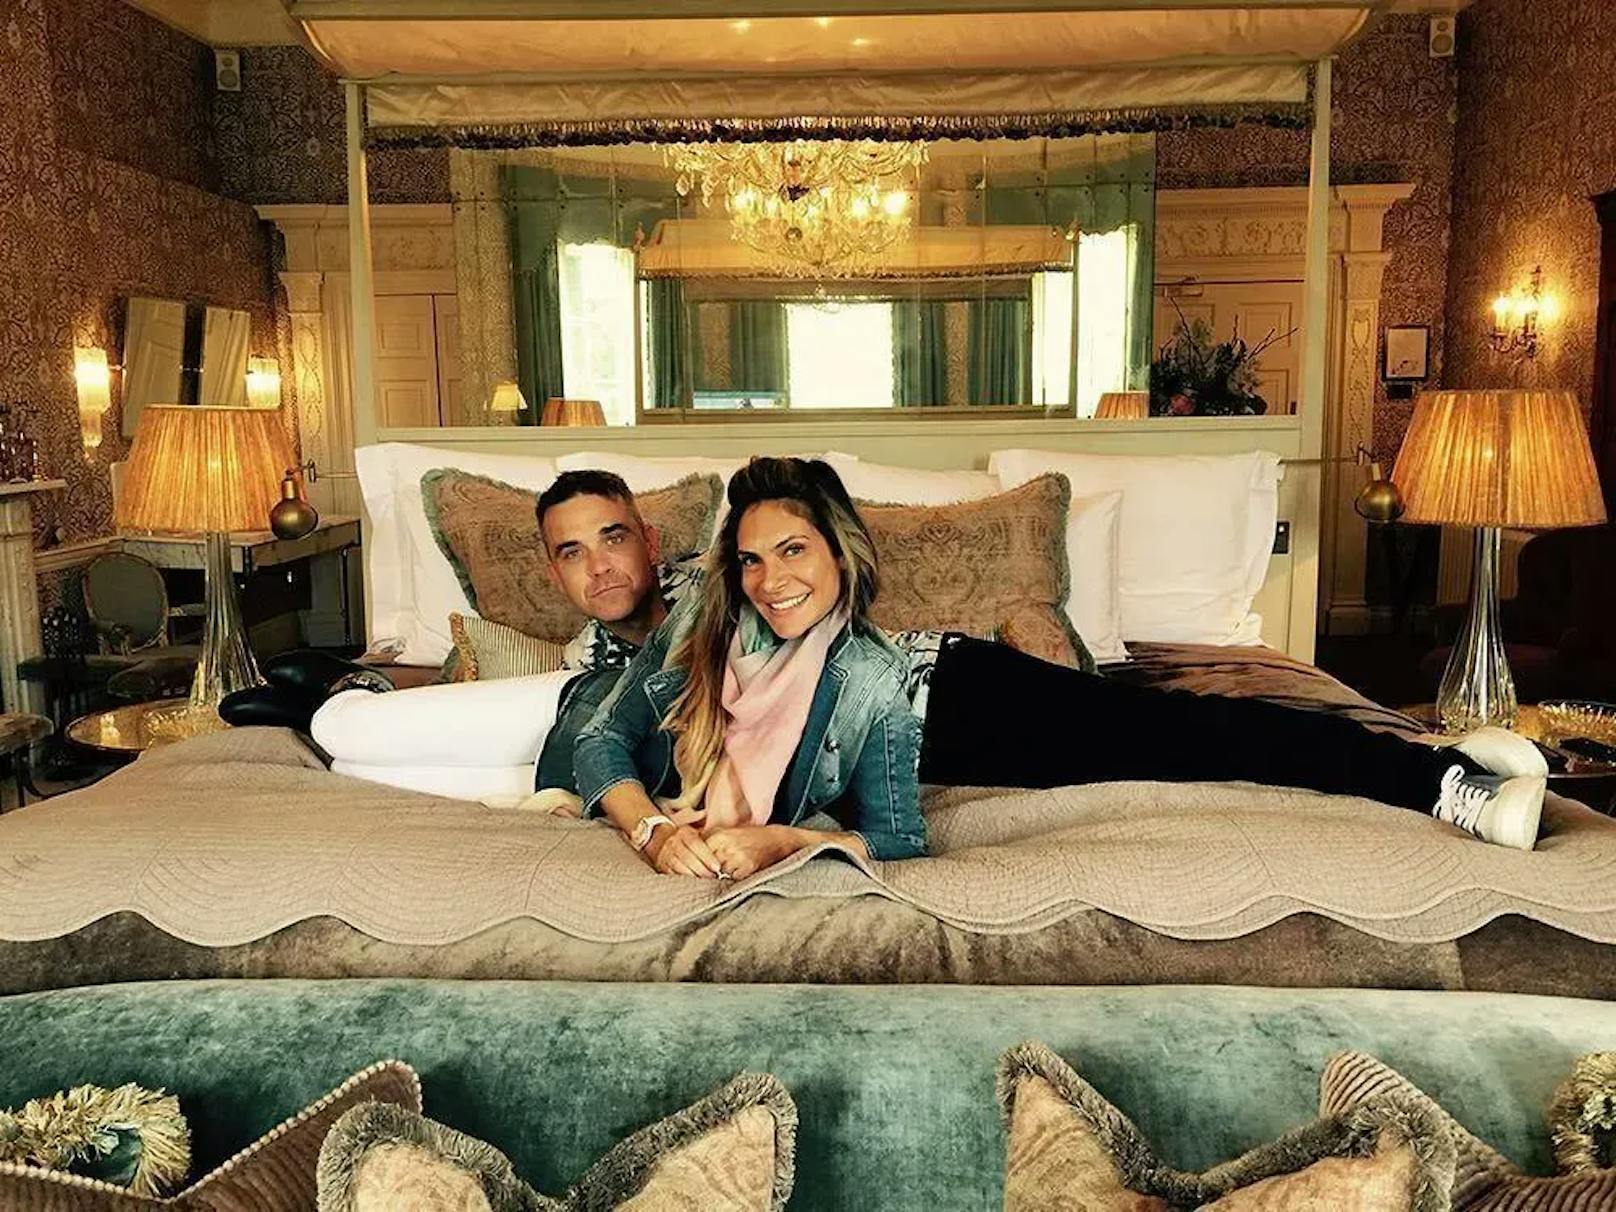 Bei Robbie Williams und seiner Ehefrau Ayda Field bleiben die Kleider im Bett derzeit an. Die beiden offenbarten, dass es zwischen ihnen seit einiger Zeit eine Sexflaute gibt.